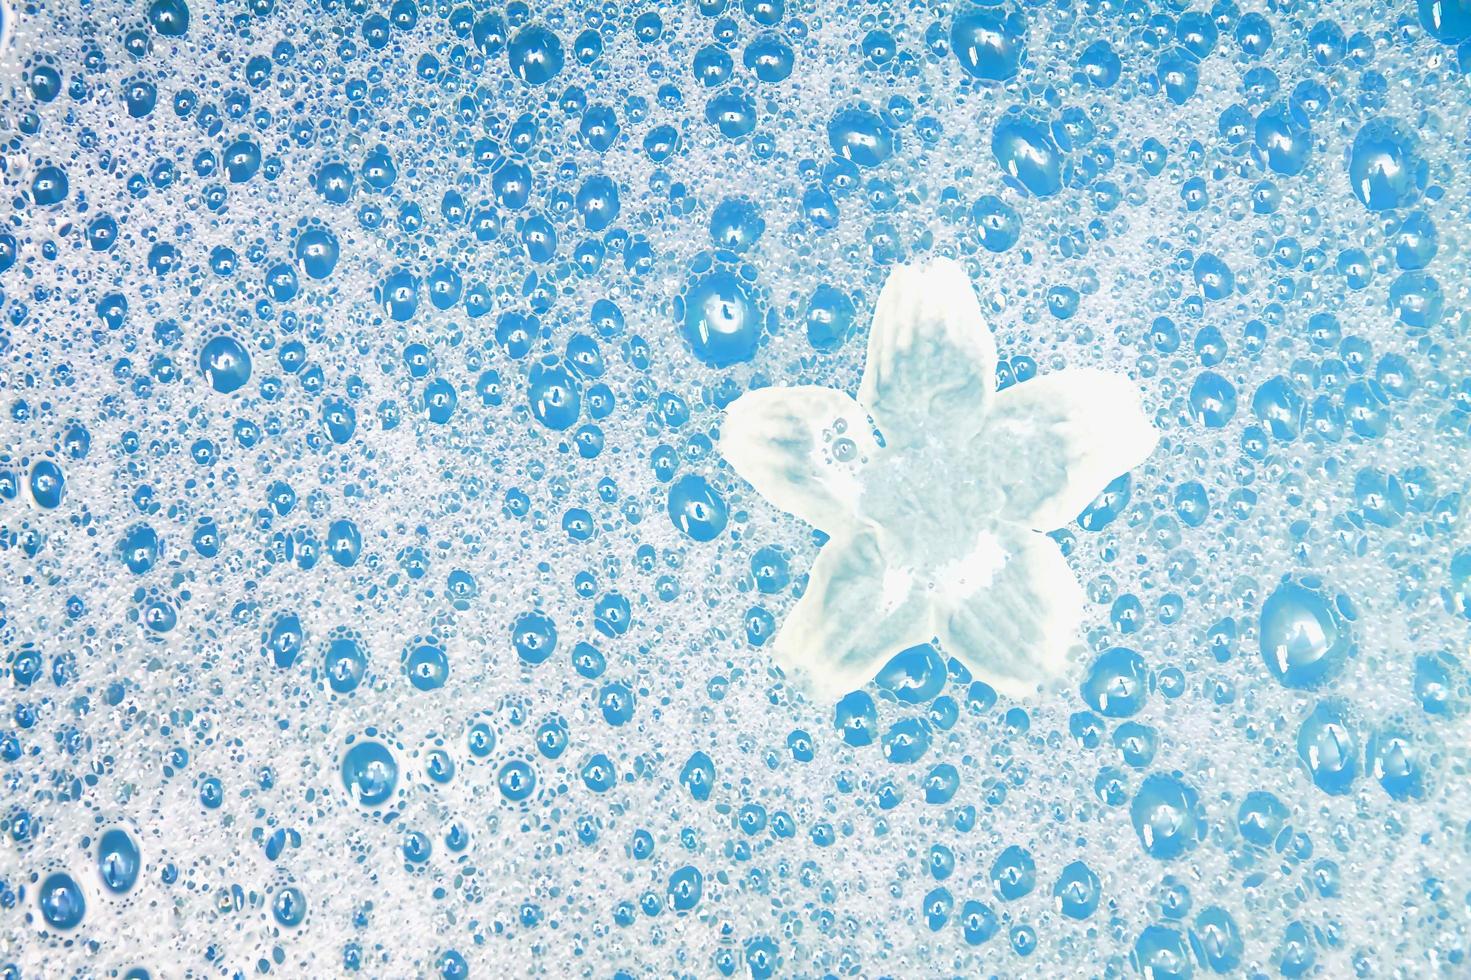 stjärna gjord av vattenbubblor på glaset foto